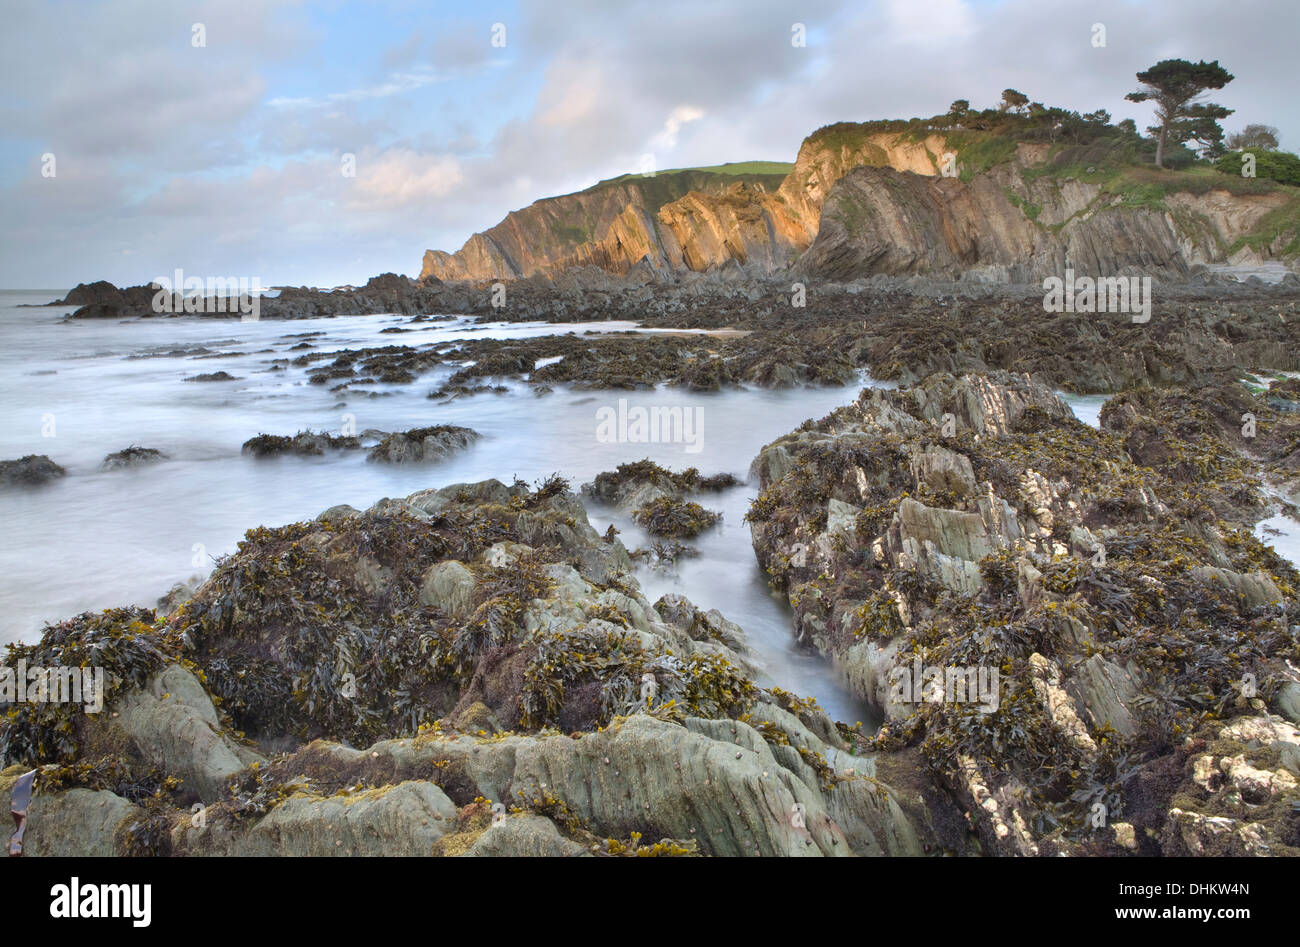 Tramonto sulle rocce a Lee Bay, North Devon, in Inghilterra con la bassa marea che mostra le frastagliate rocce sotto il mare. Foto Stock